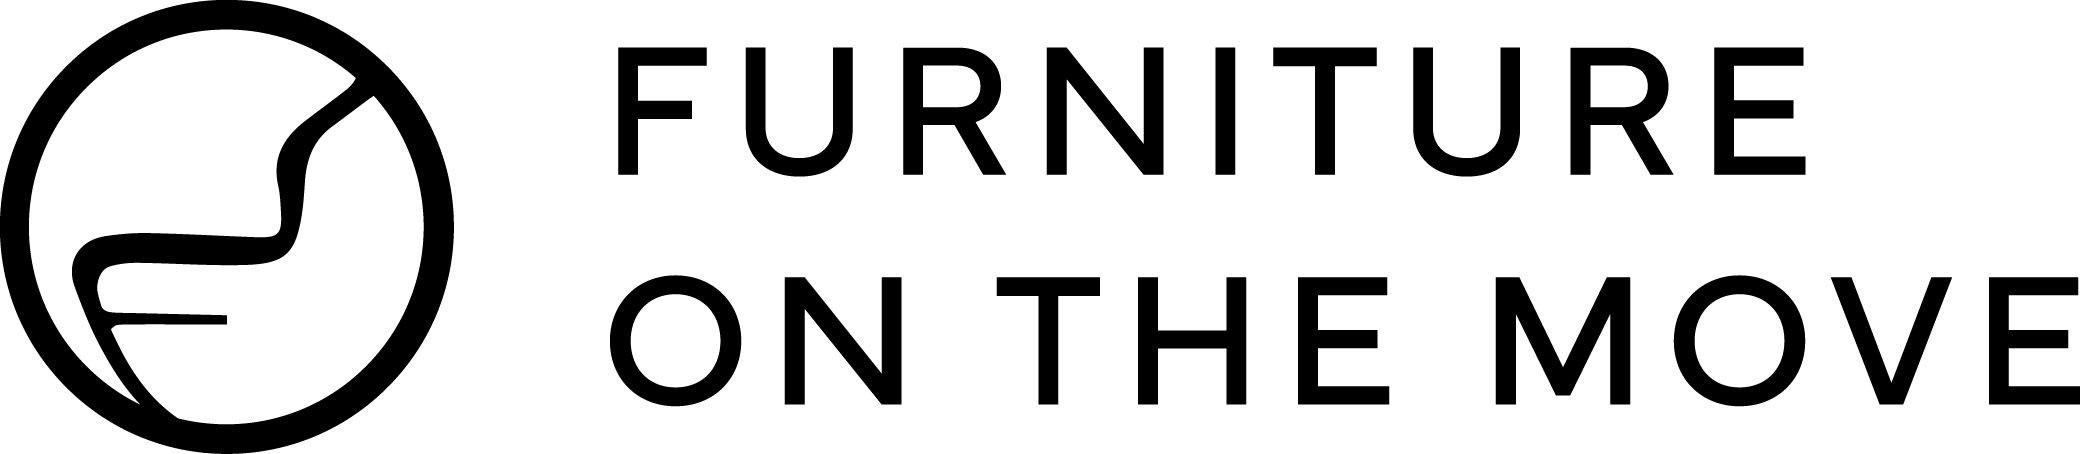 FOTM - Logo Web Wide - Black